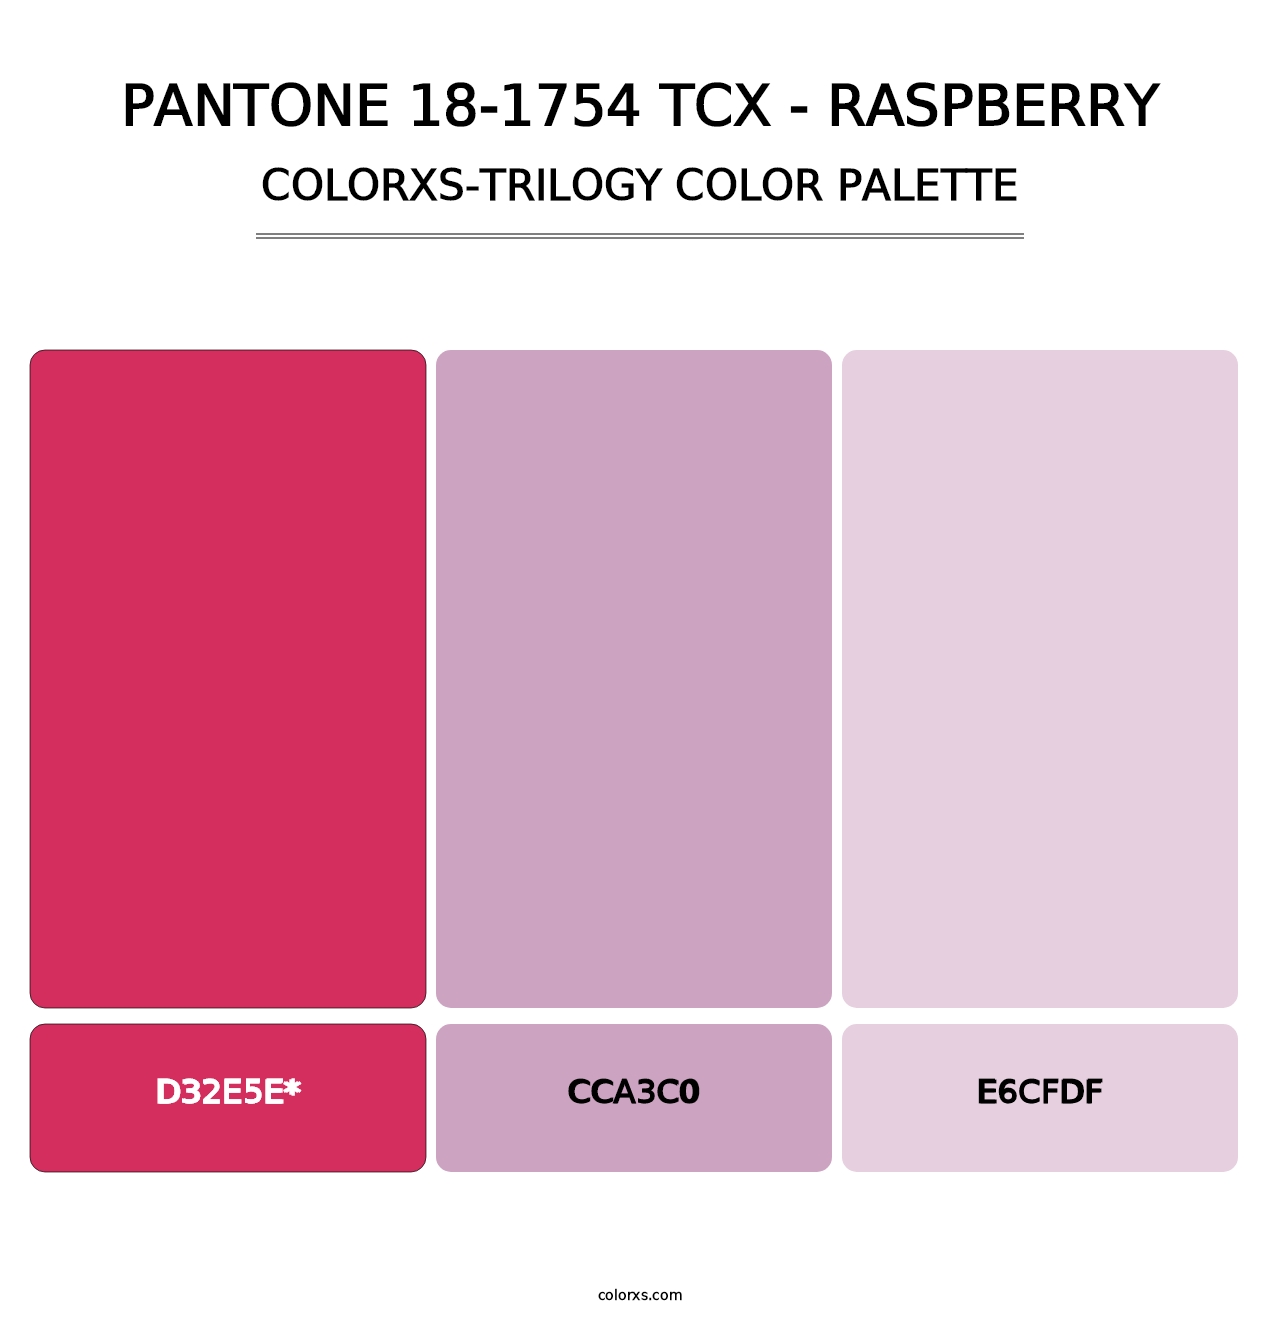 PANTONE 18-1754 TCX - Raspberry - Colorxs Trilogy Palette